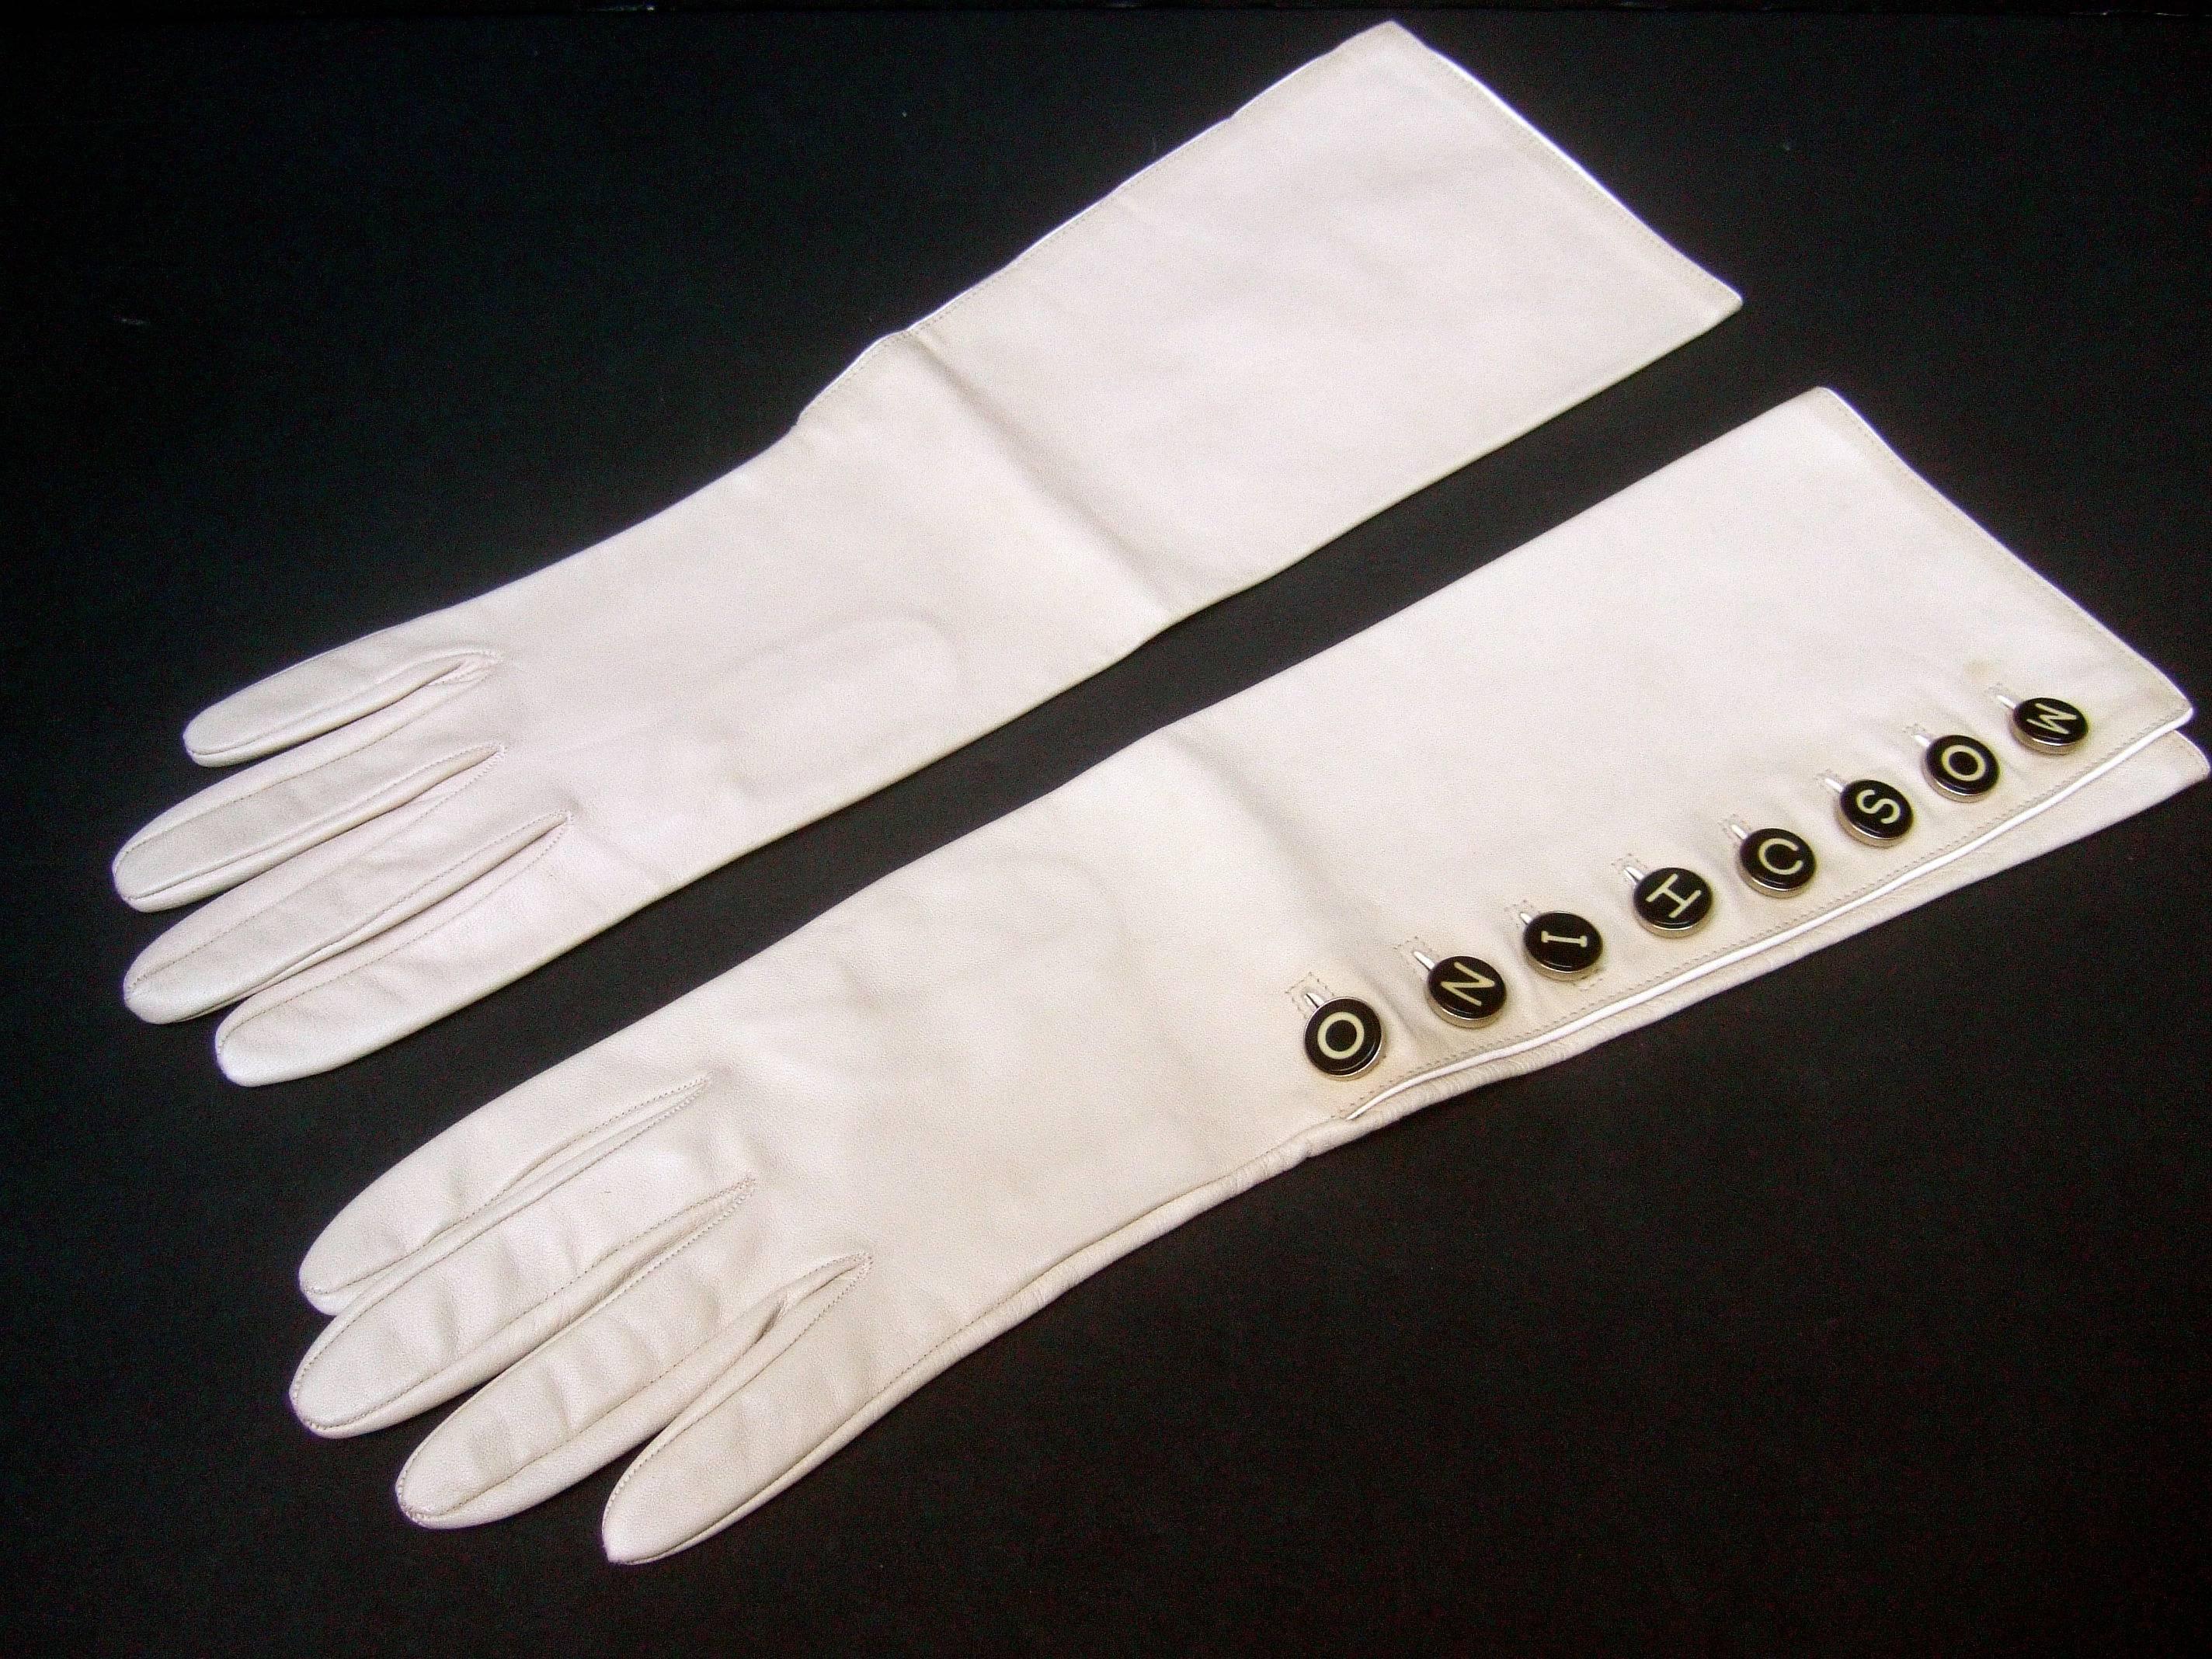 Moschino Chic Elfenbein Leder Ziegenleder Handschuhe c 1990s
Die italienischen Lederhandschuhe sind entworfen
mit einer Reihe von Tasten im Stil einer Schreibmaschinentaste 
auf einem Handschuh der Schriftzug Moschino 

Die geschmeidigen